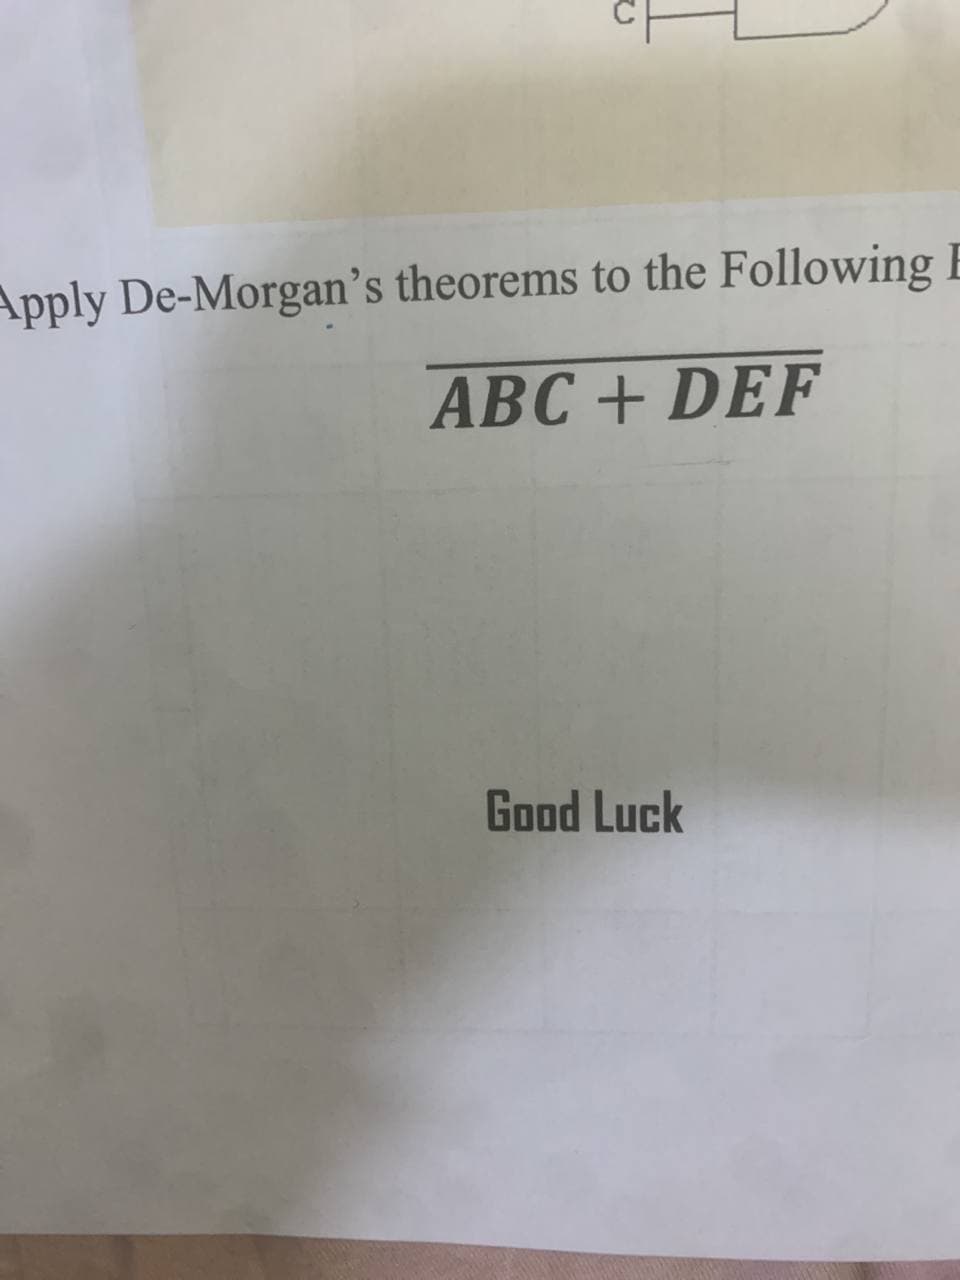 Apply De-Morgan's theorems to the Following E
ABC + DEF
Good Luck
